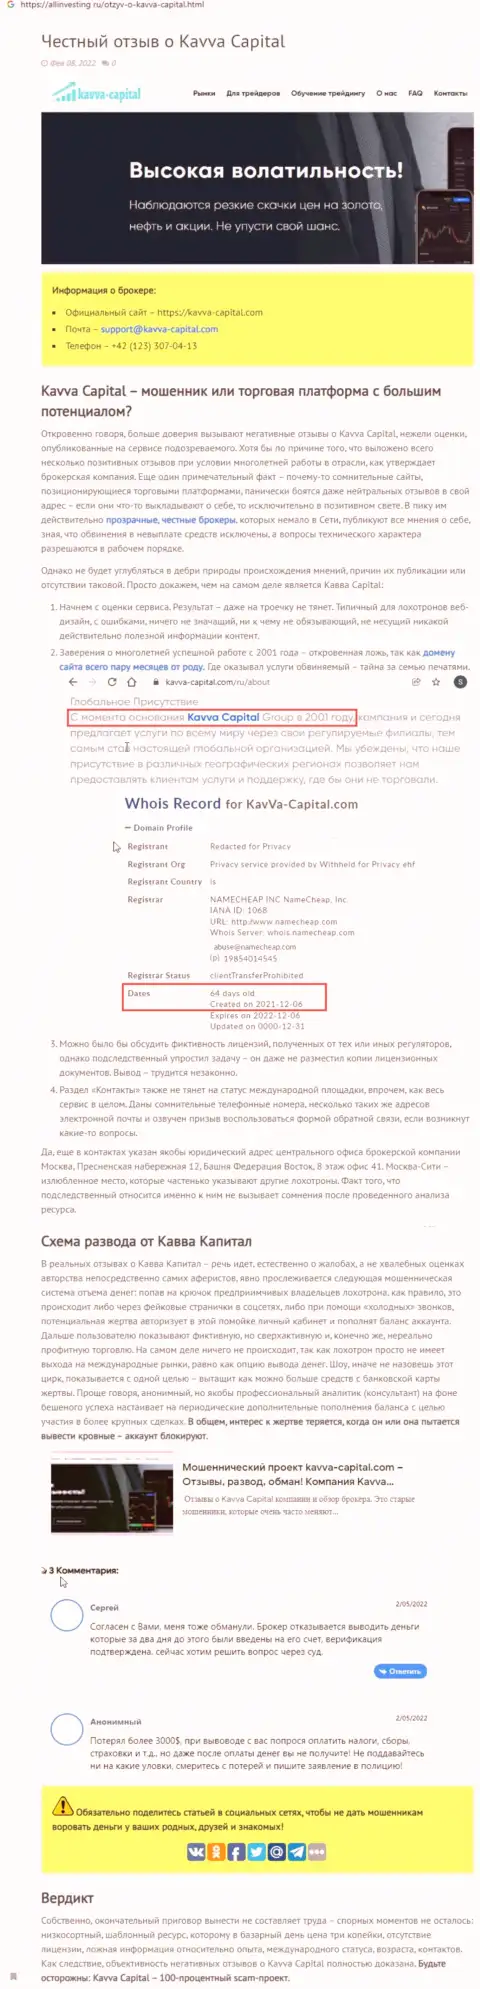 Kavva Capital Com: обзор преступно действующей компании и объективные отзывы, утративших вклады клиентов